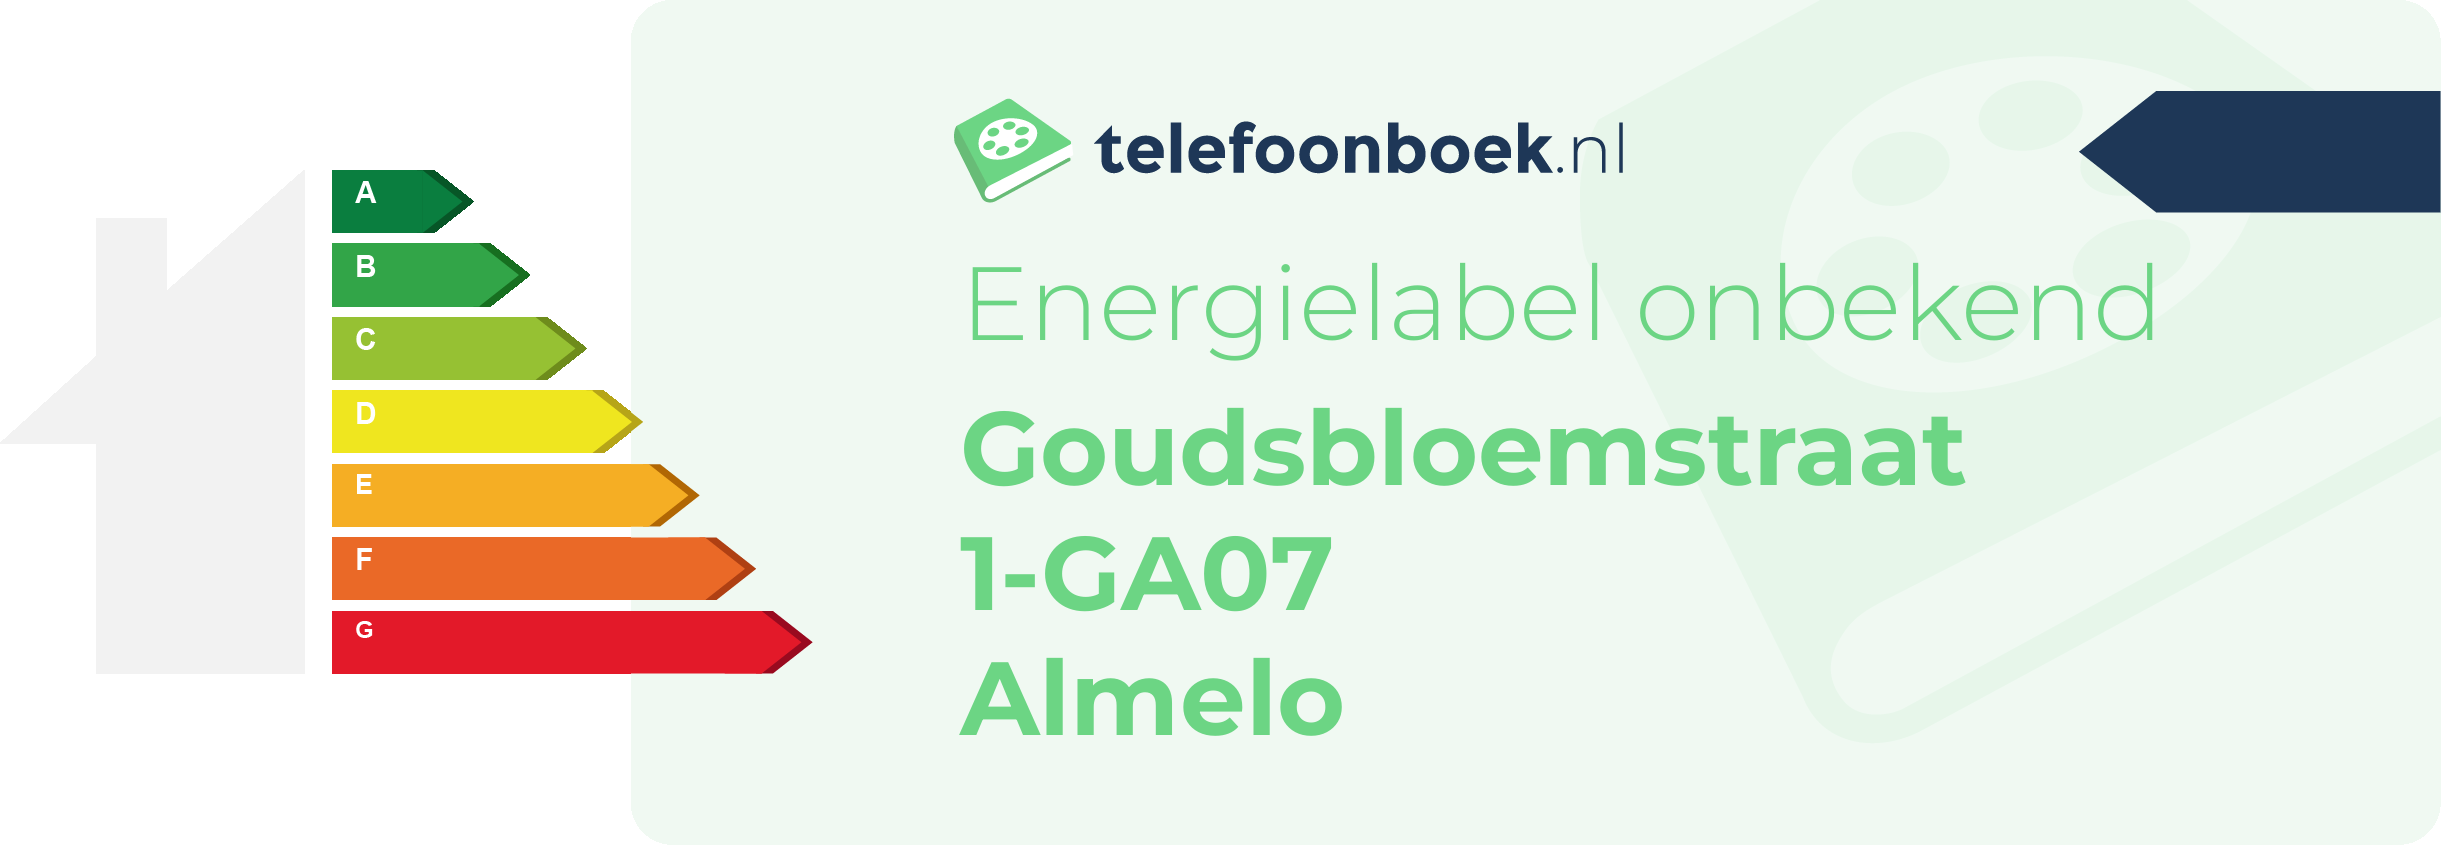 Energielabel Goudsbloemstraat 1-GA07 Almelo